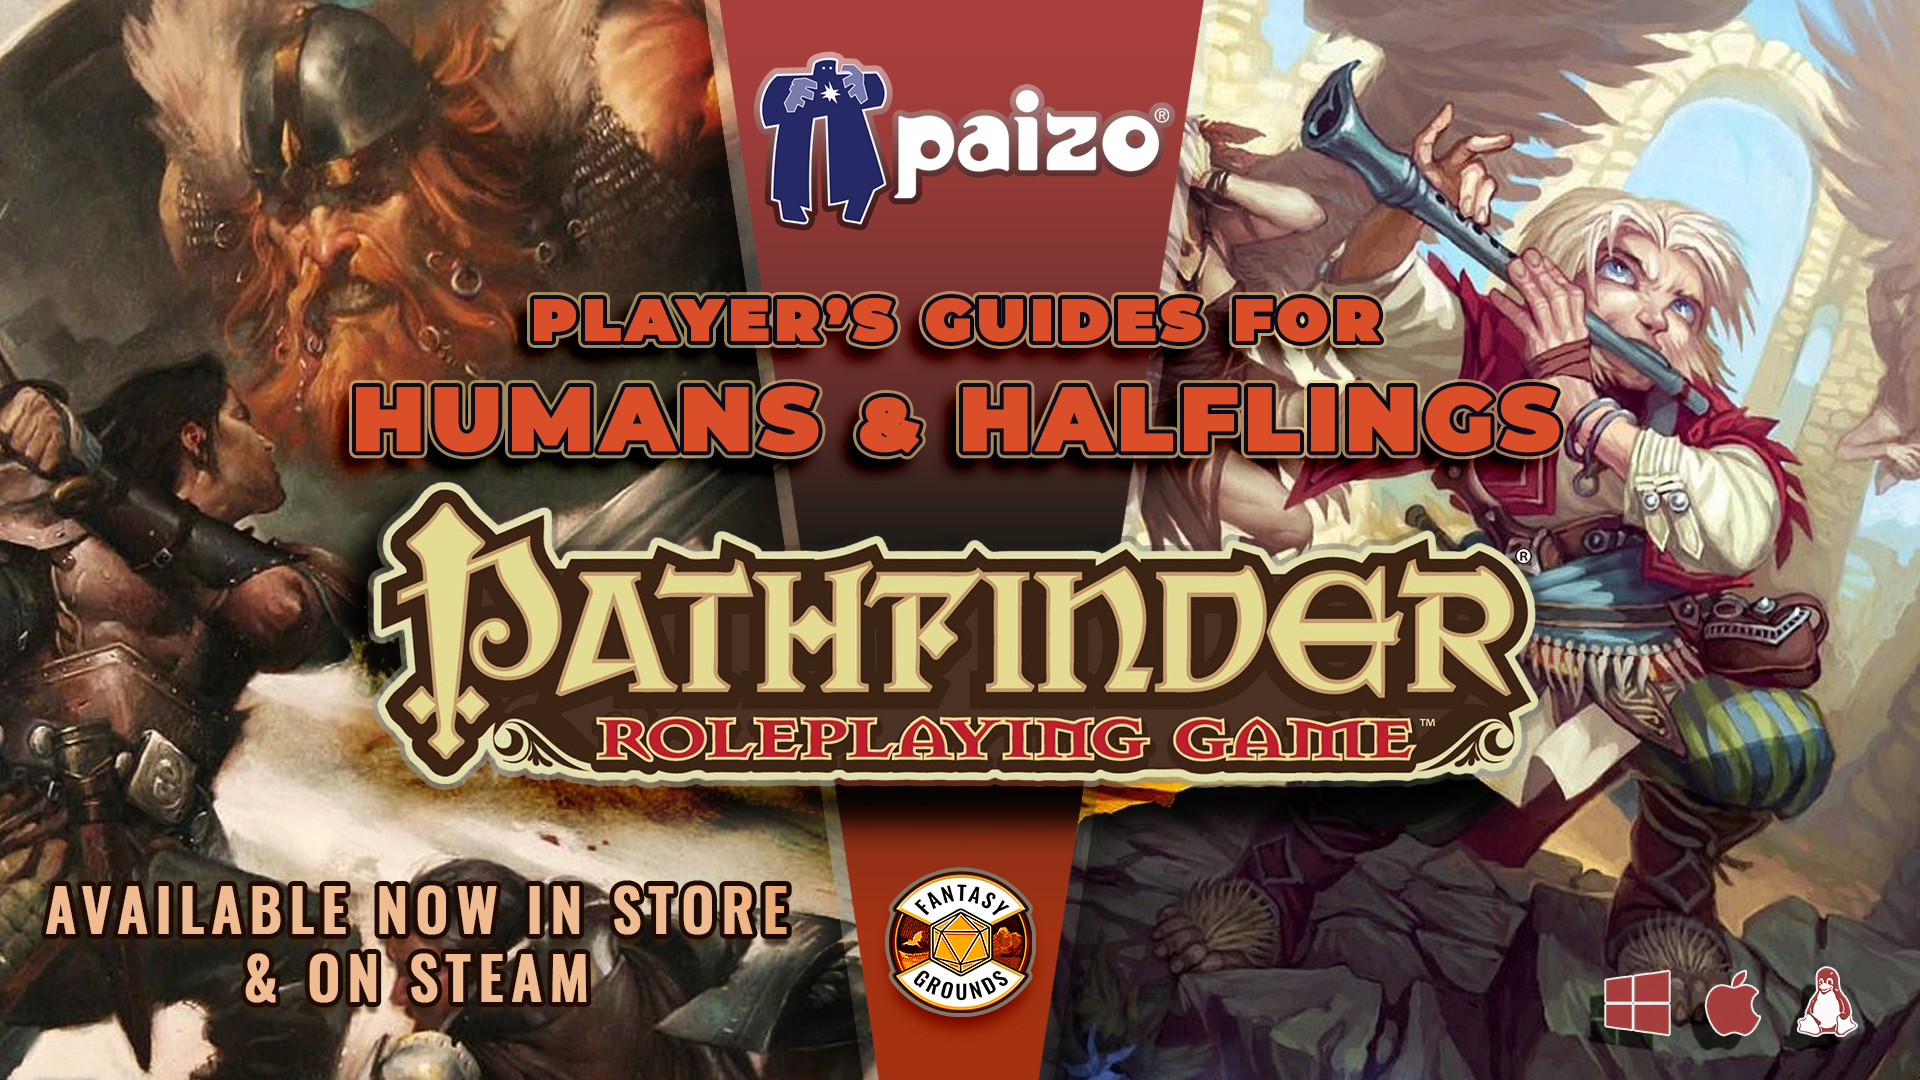 Pathfinder RPG - Homans and Halflings of Golarian.jpg